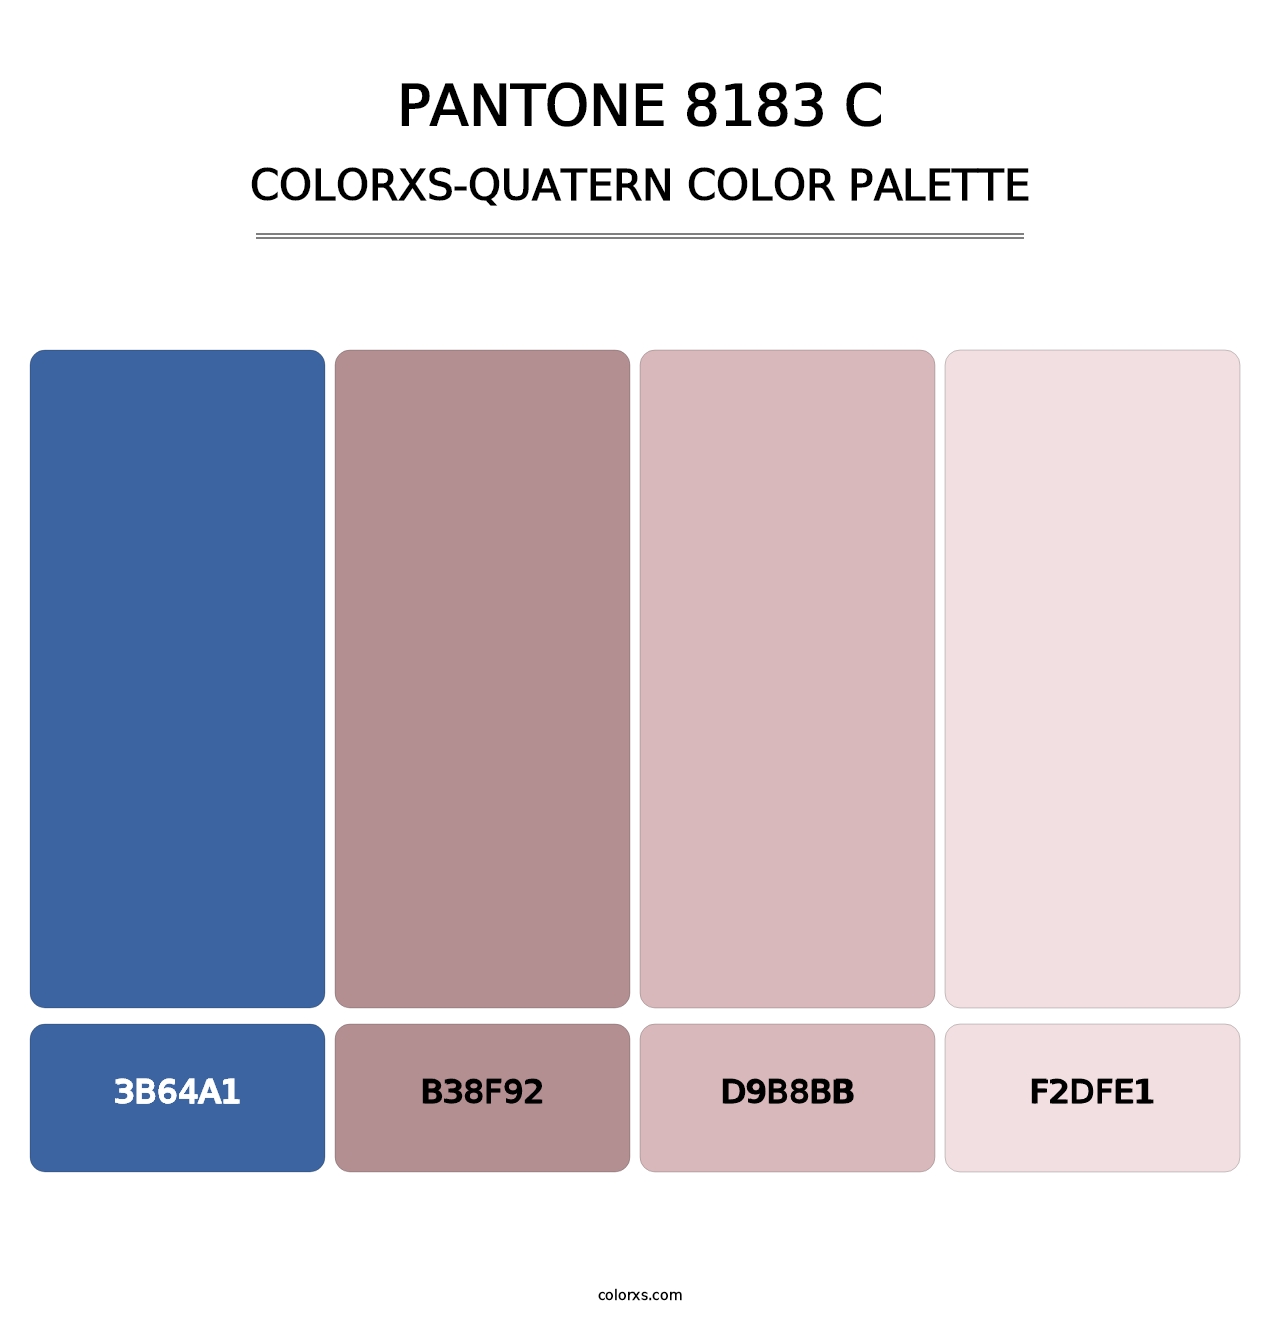 PANTONE 8183 C - Colorxs Quatern Palette